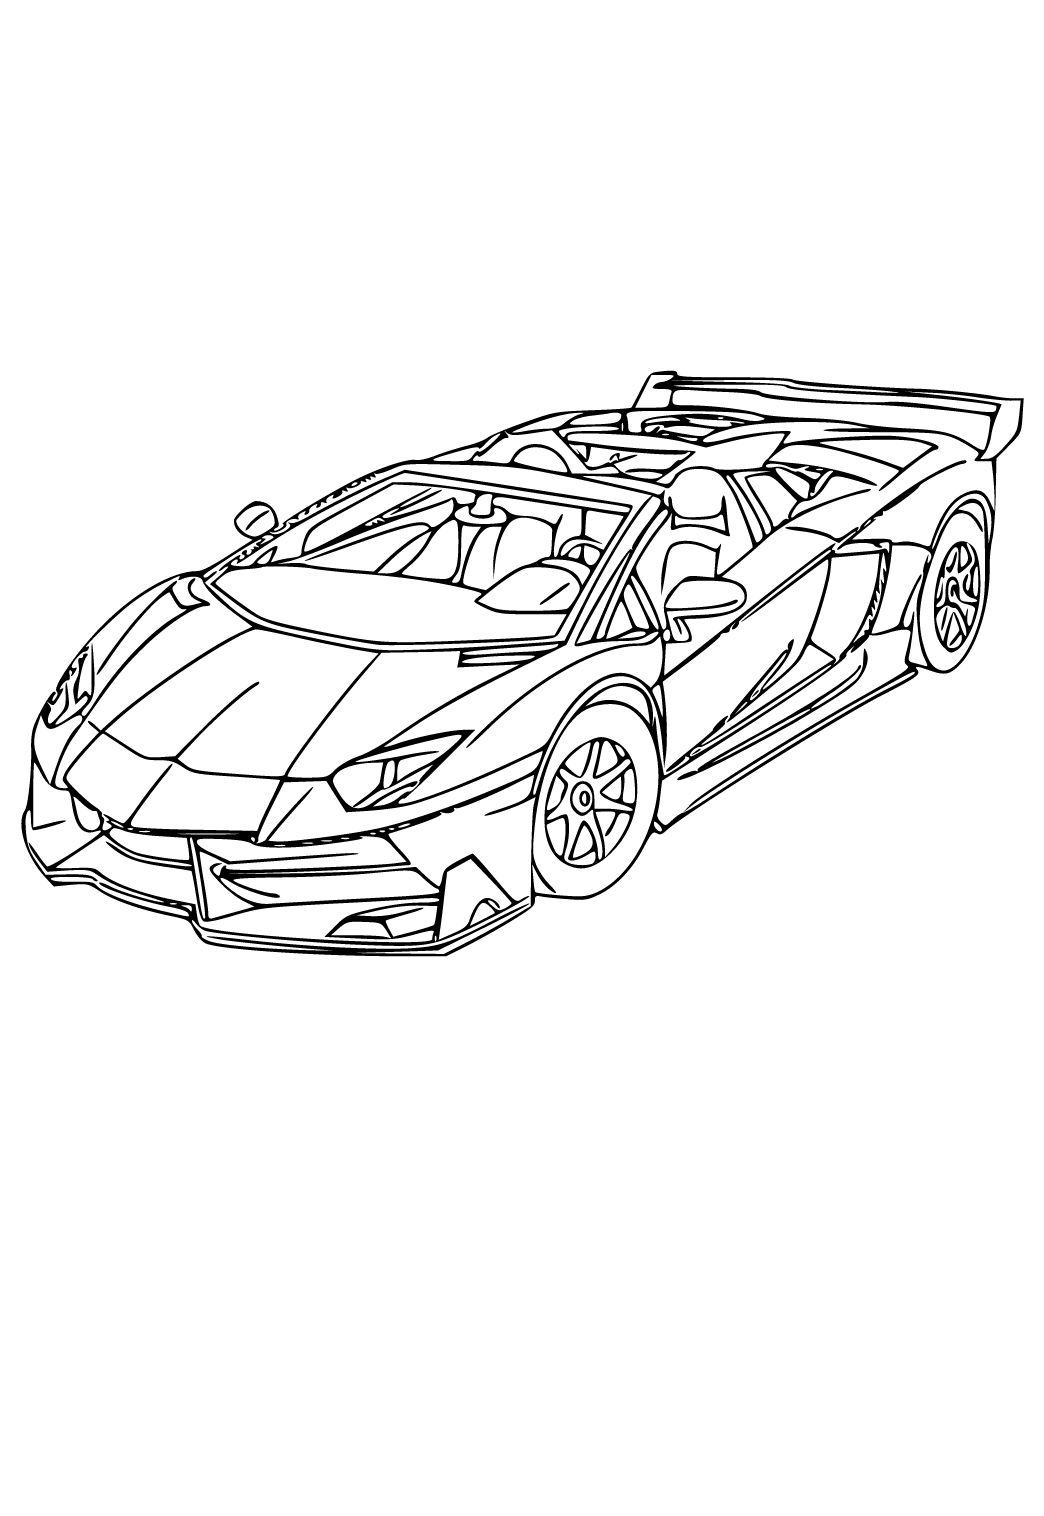 Chuẩn Bị chỗ làm xe mới  Lên bản vẽ 3d  Dương Nước Tương  3D drawing of  Lamborghini Terzo P1  YouTube